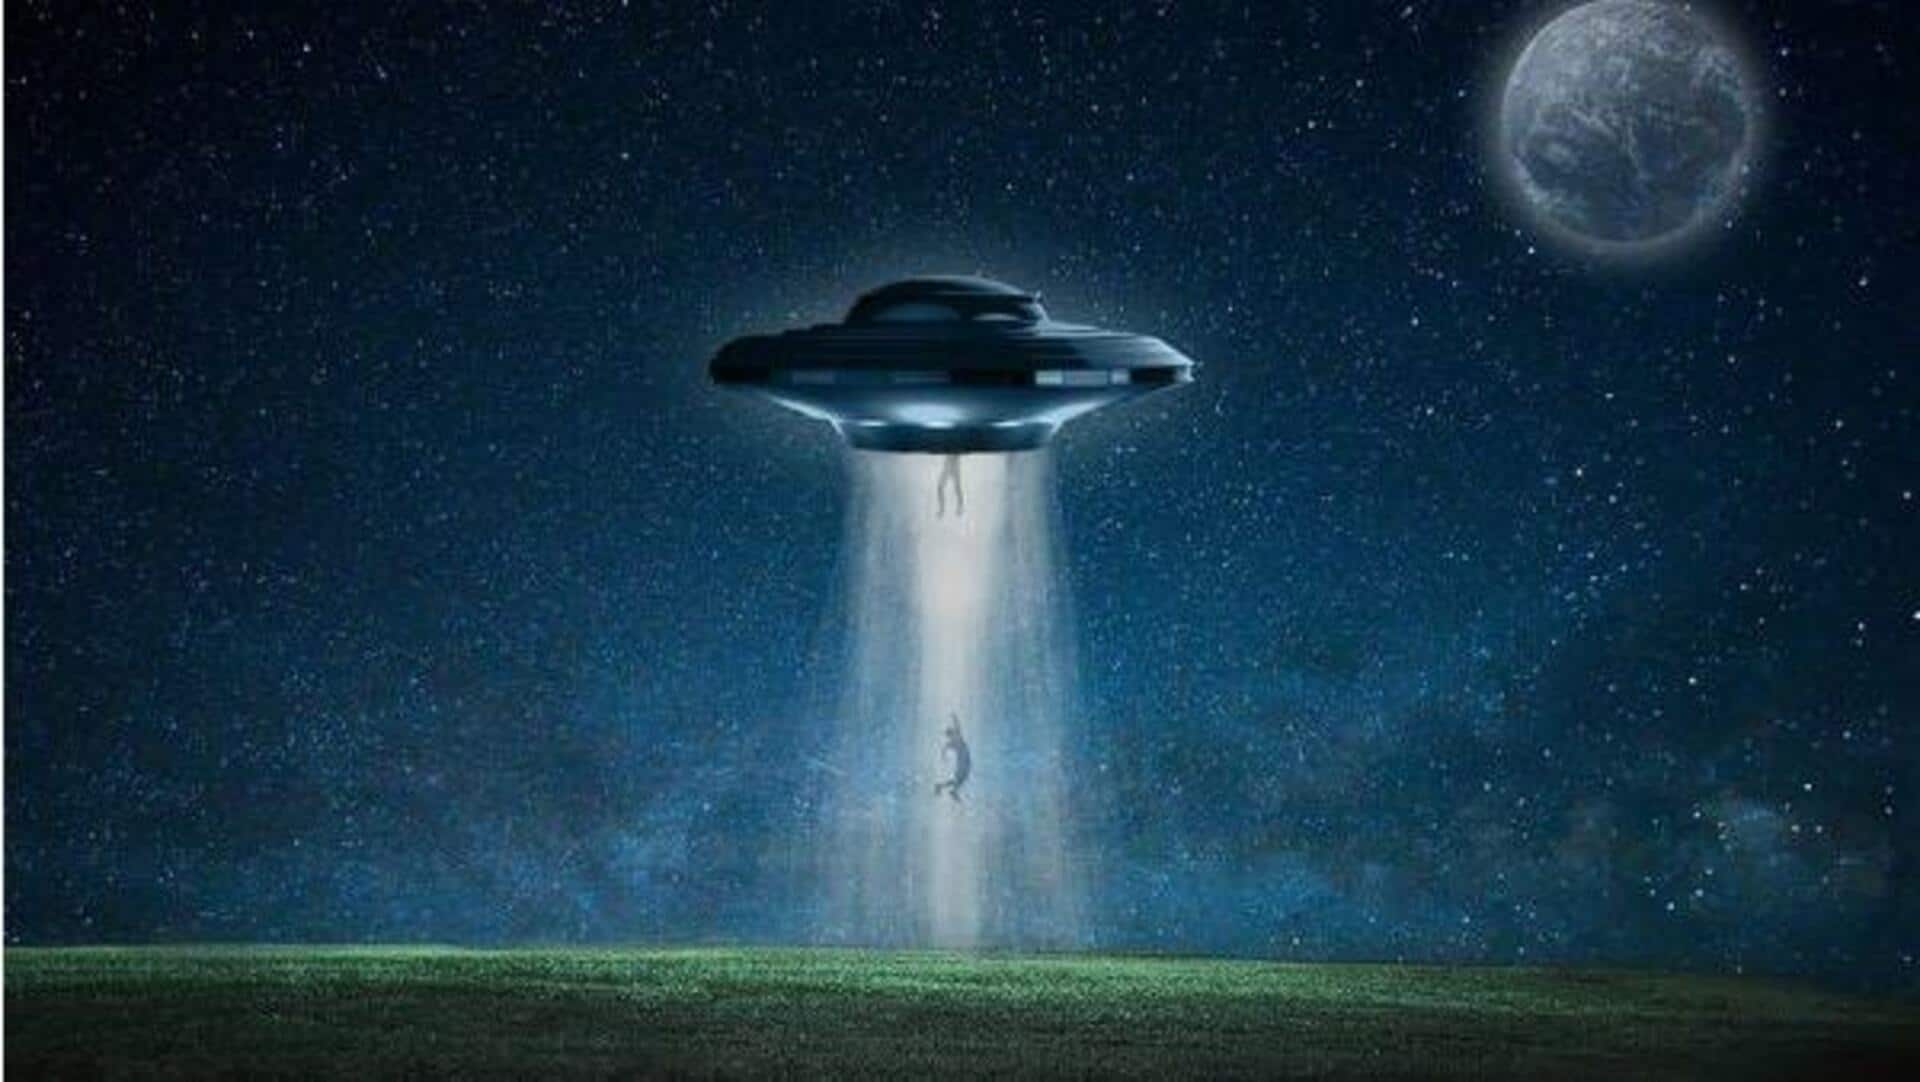 உலக UFO தினம்: இந்தப் பேரண்டத்தில் நாம் மட்டும் தான் தனியாக இருக்கிறோமா?